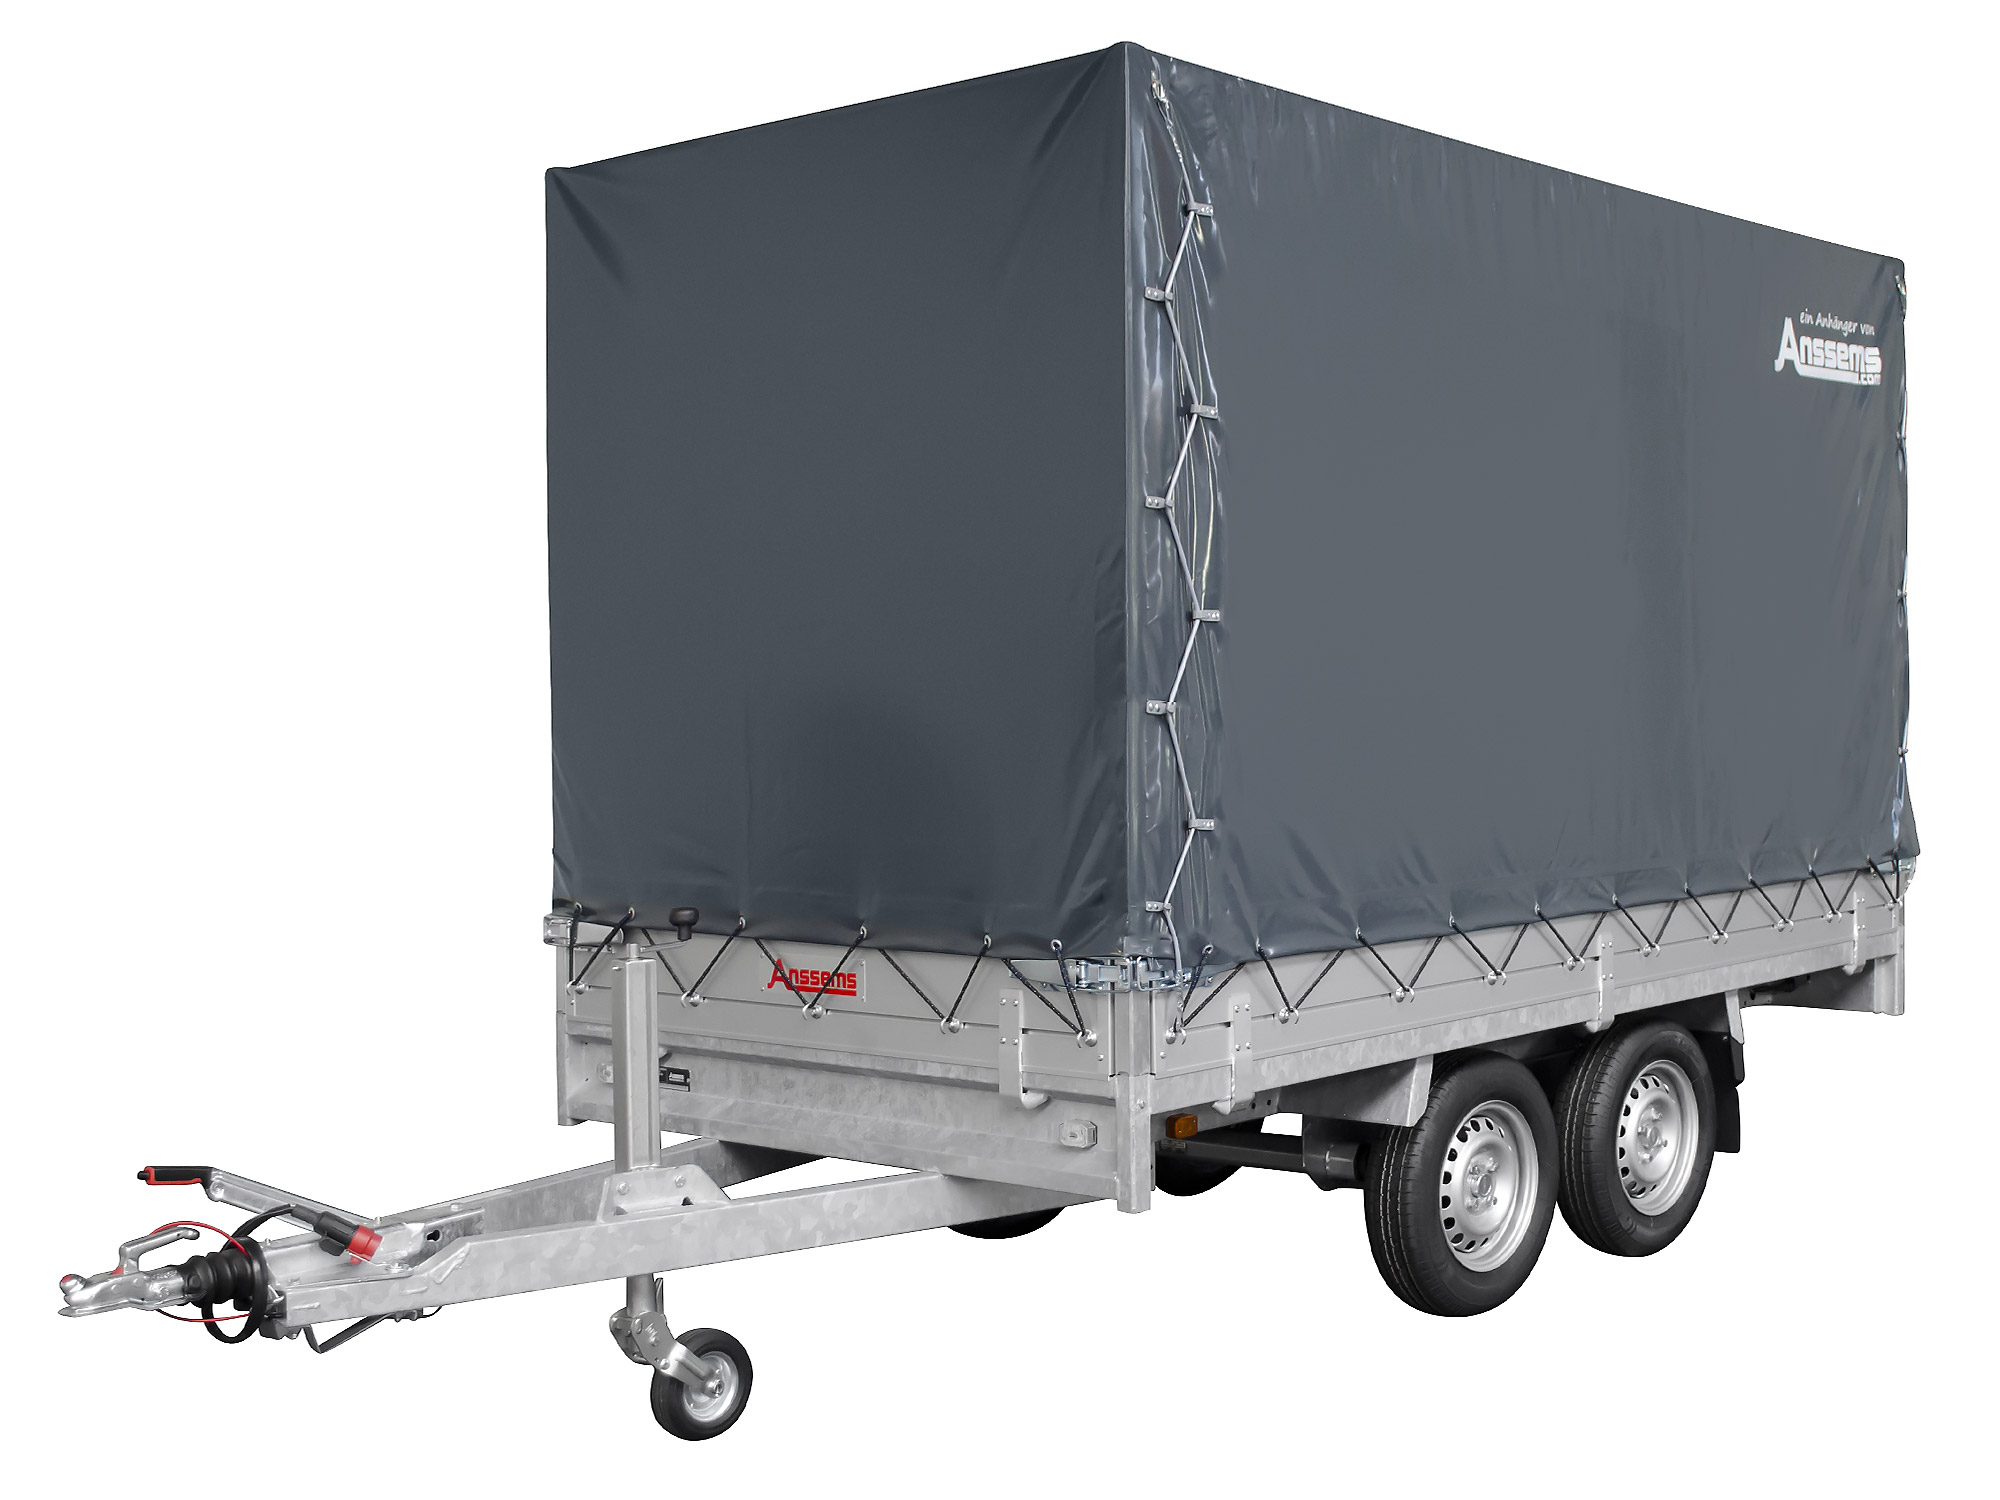 Anssems PKW Anhänger Hochlader Alu 3000 kg, Ladefläche 4,05 x 1,78 m mit Aktionsplane 1,80m